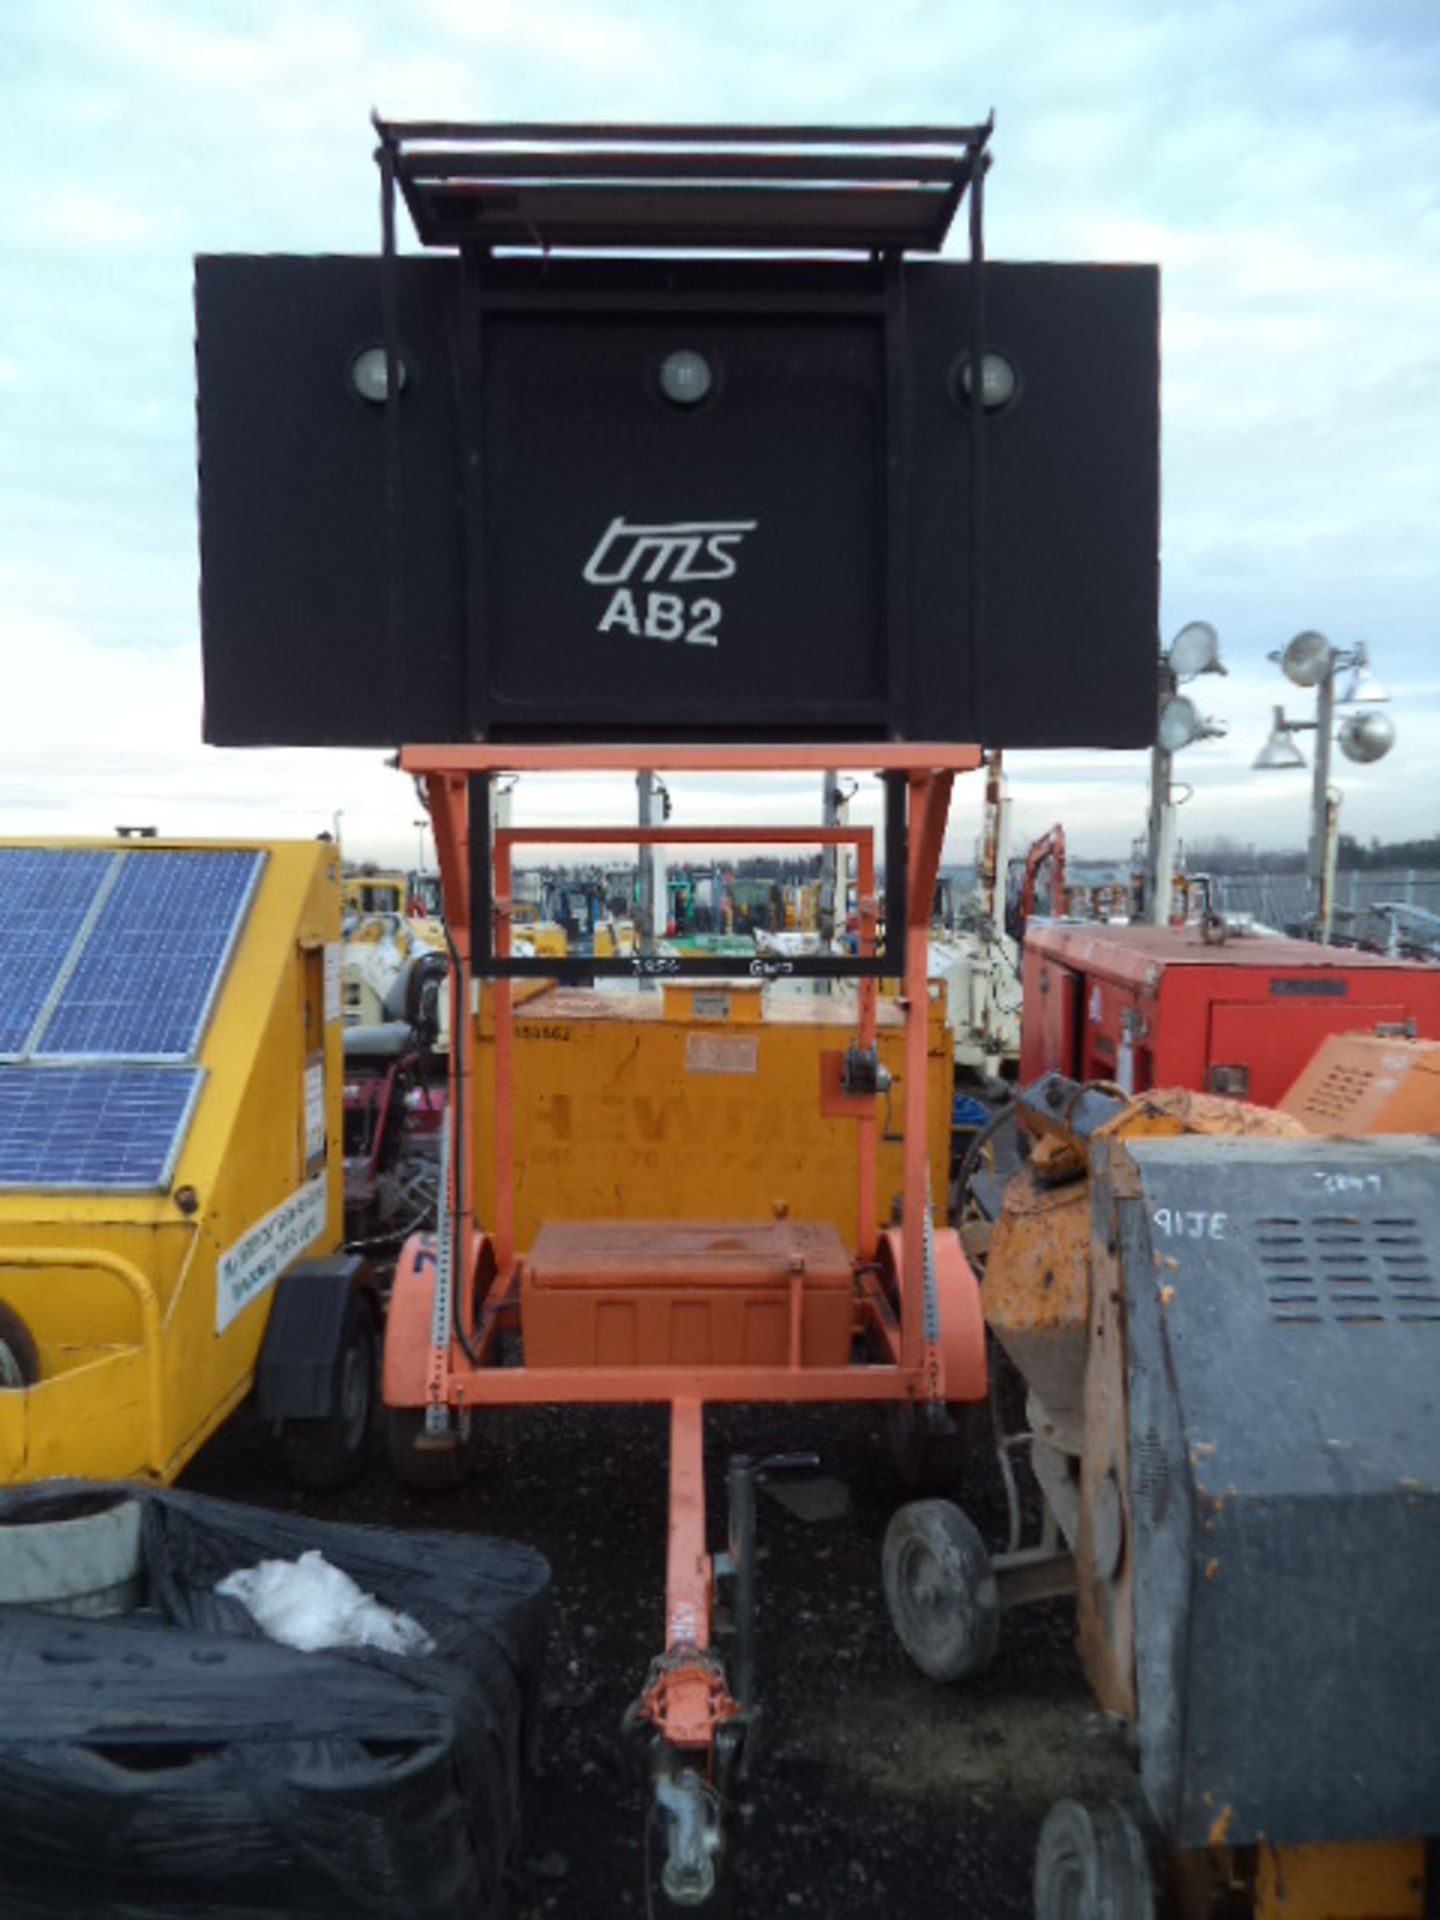 Solar traffic light trailer